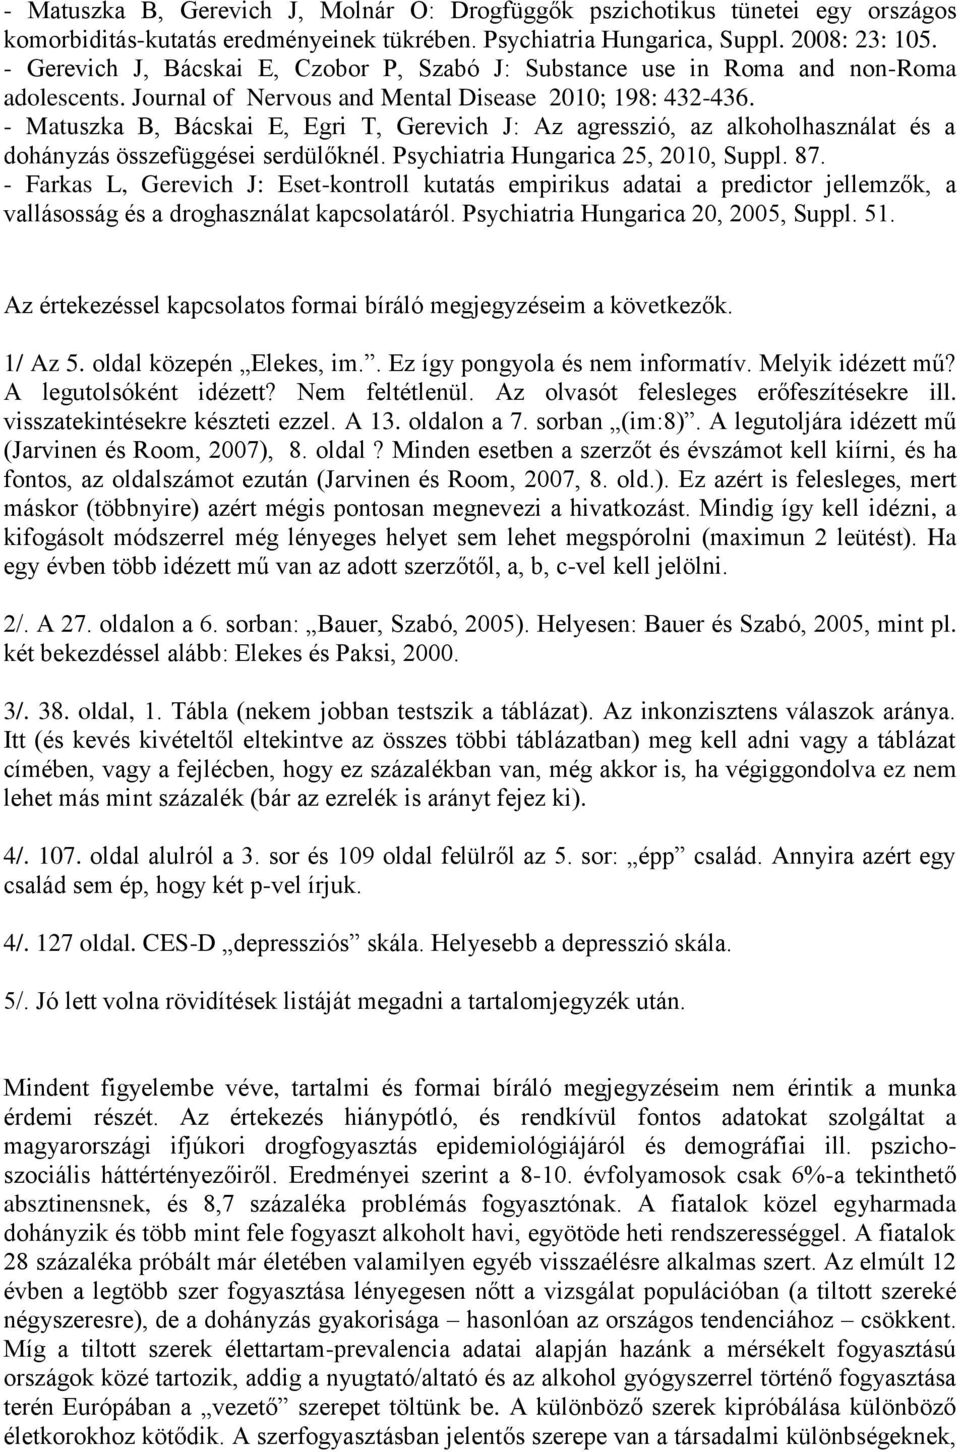 - Matuszka B, Bácskai E, Egri T, Gerevich J: Az agresszió, az alkoholhasználat és a dohányzás összefüggései serdülőknél. Psychiatria Hungarica 25, 2010, Suppl. 87.